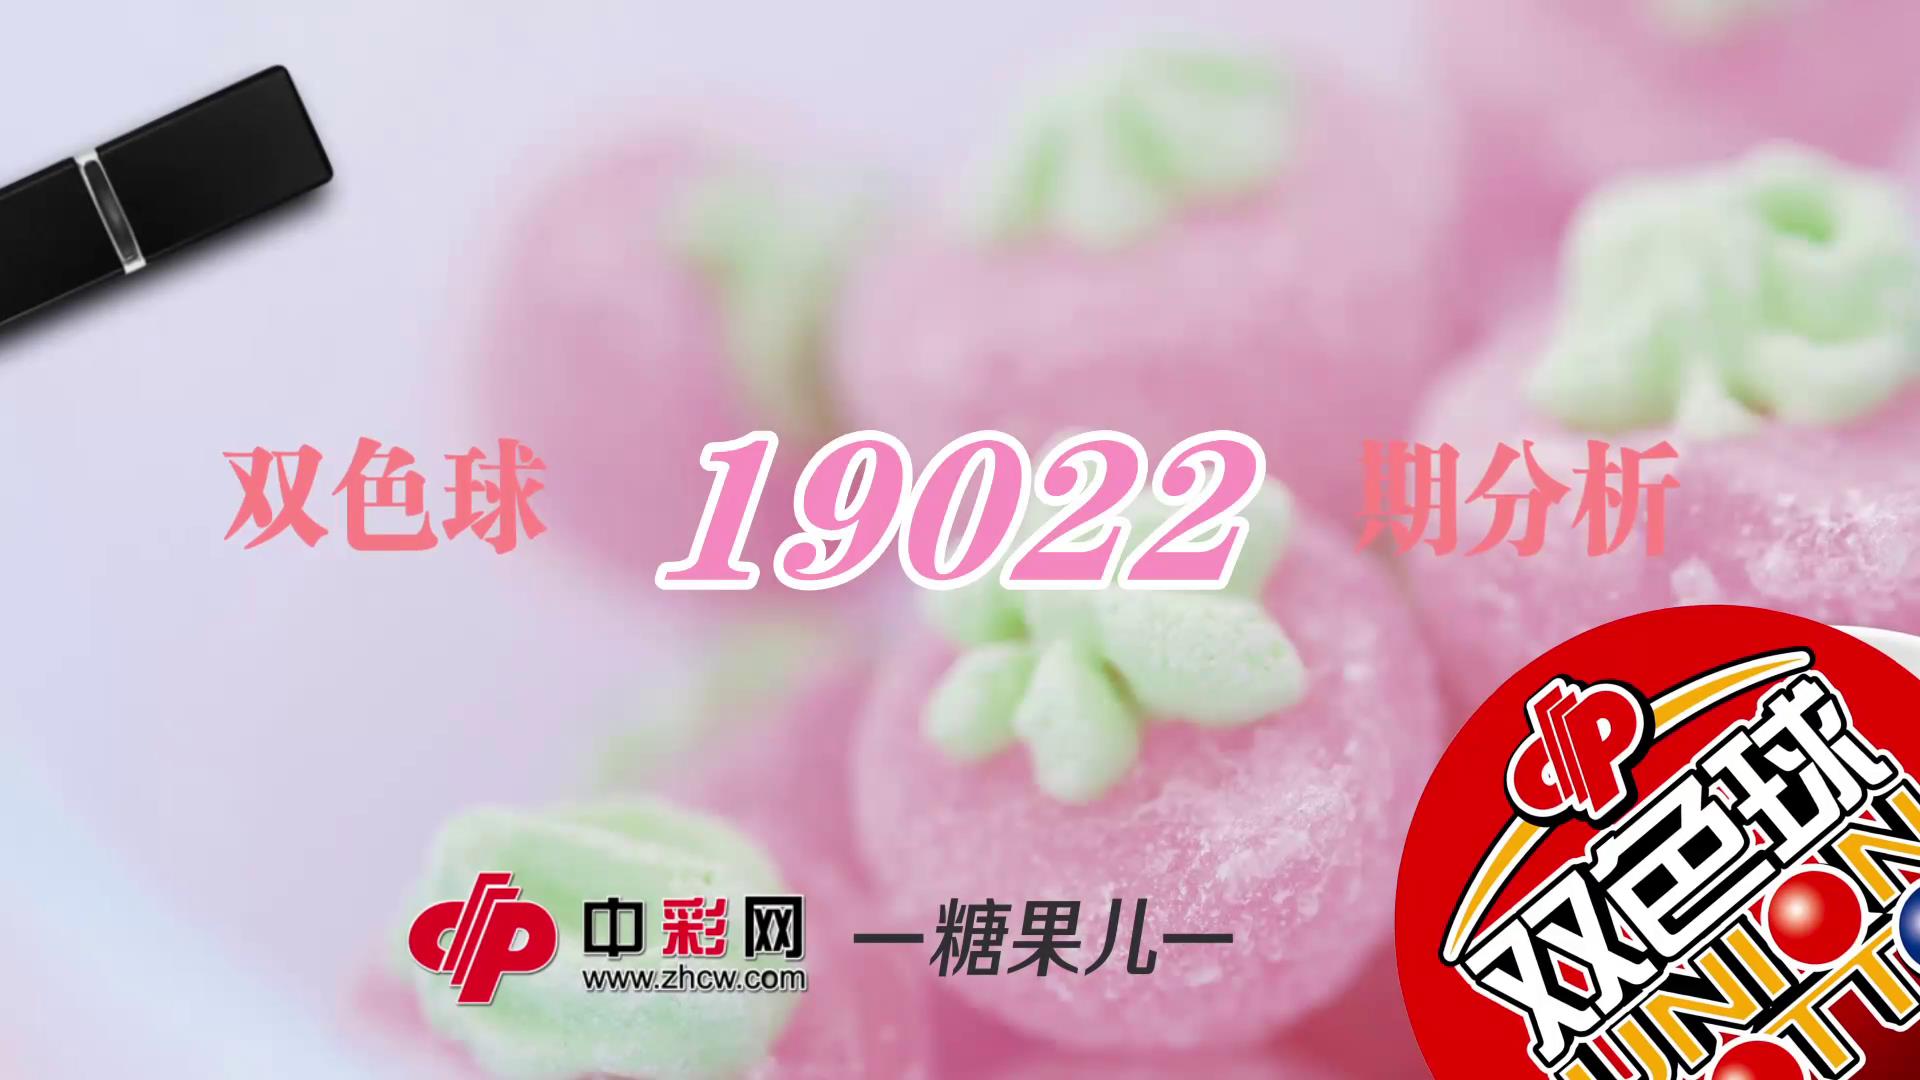 【中彩视频】糖果儿双色球第19022期